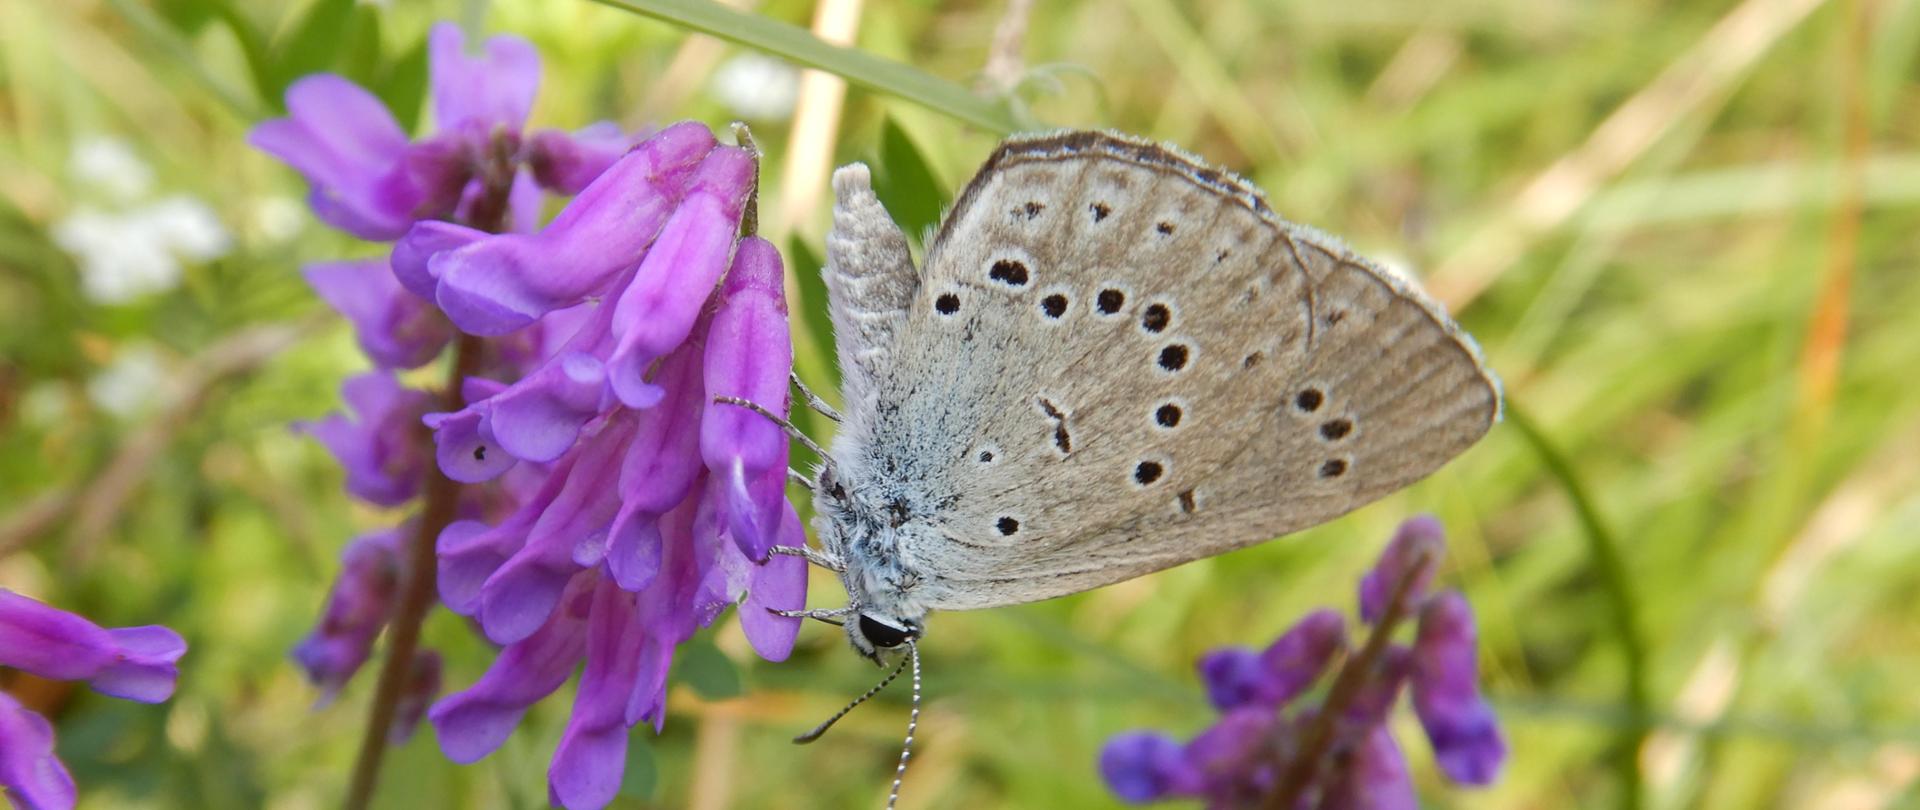 motyl z gatunku modraszek telejus na łące